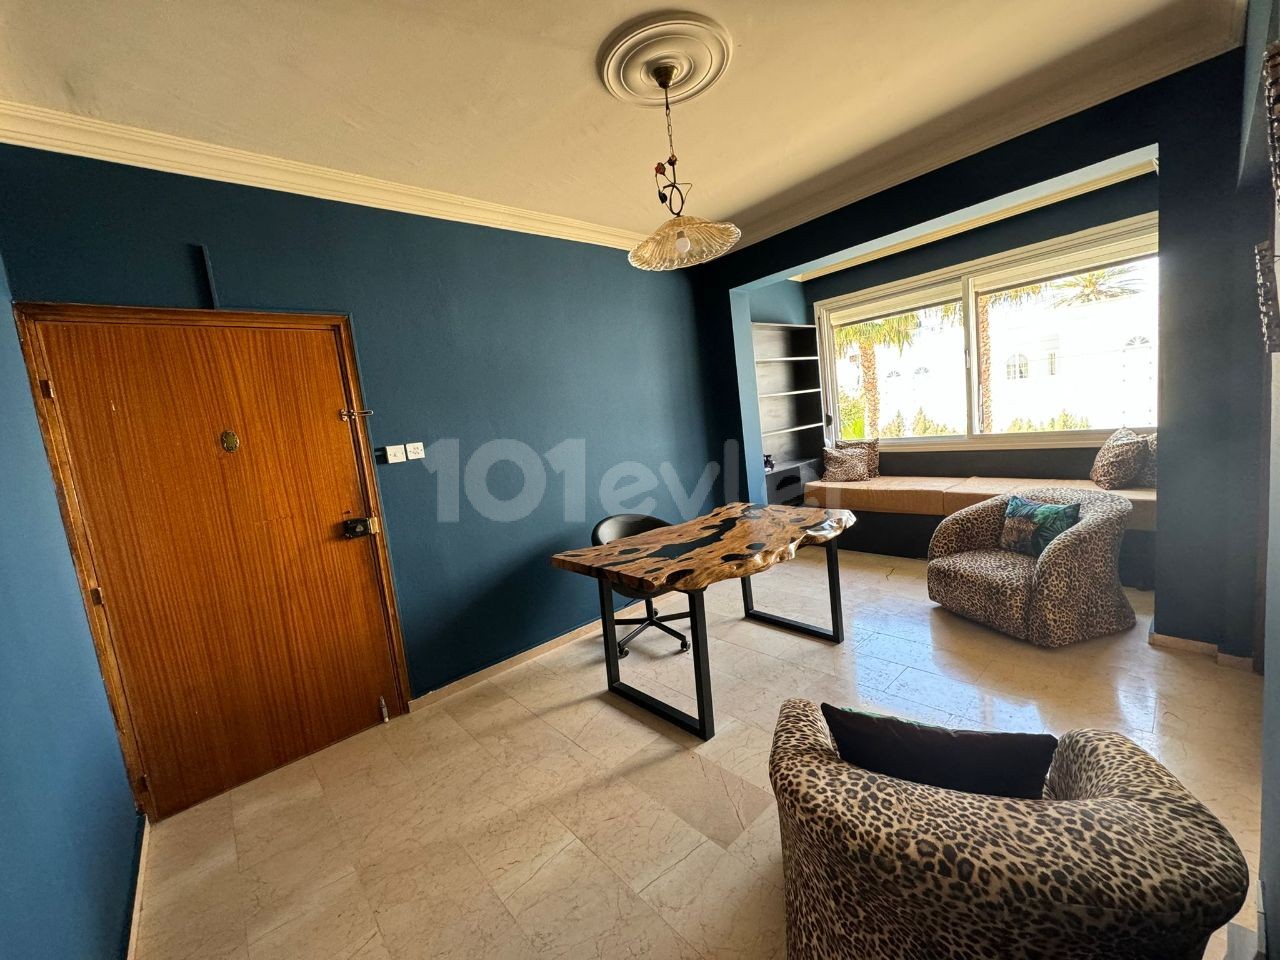 3+1, 130 m2, 1. Etage, sauber, kostenlos, große Wohnung zum Verkauf in Nikosia Köşklüçiftlik Dereboyu